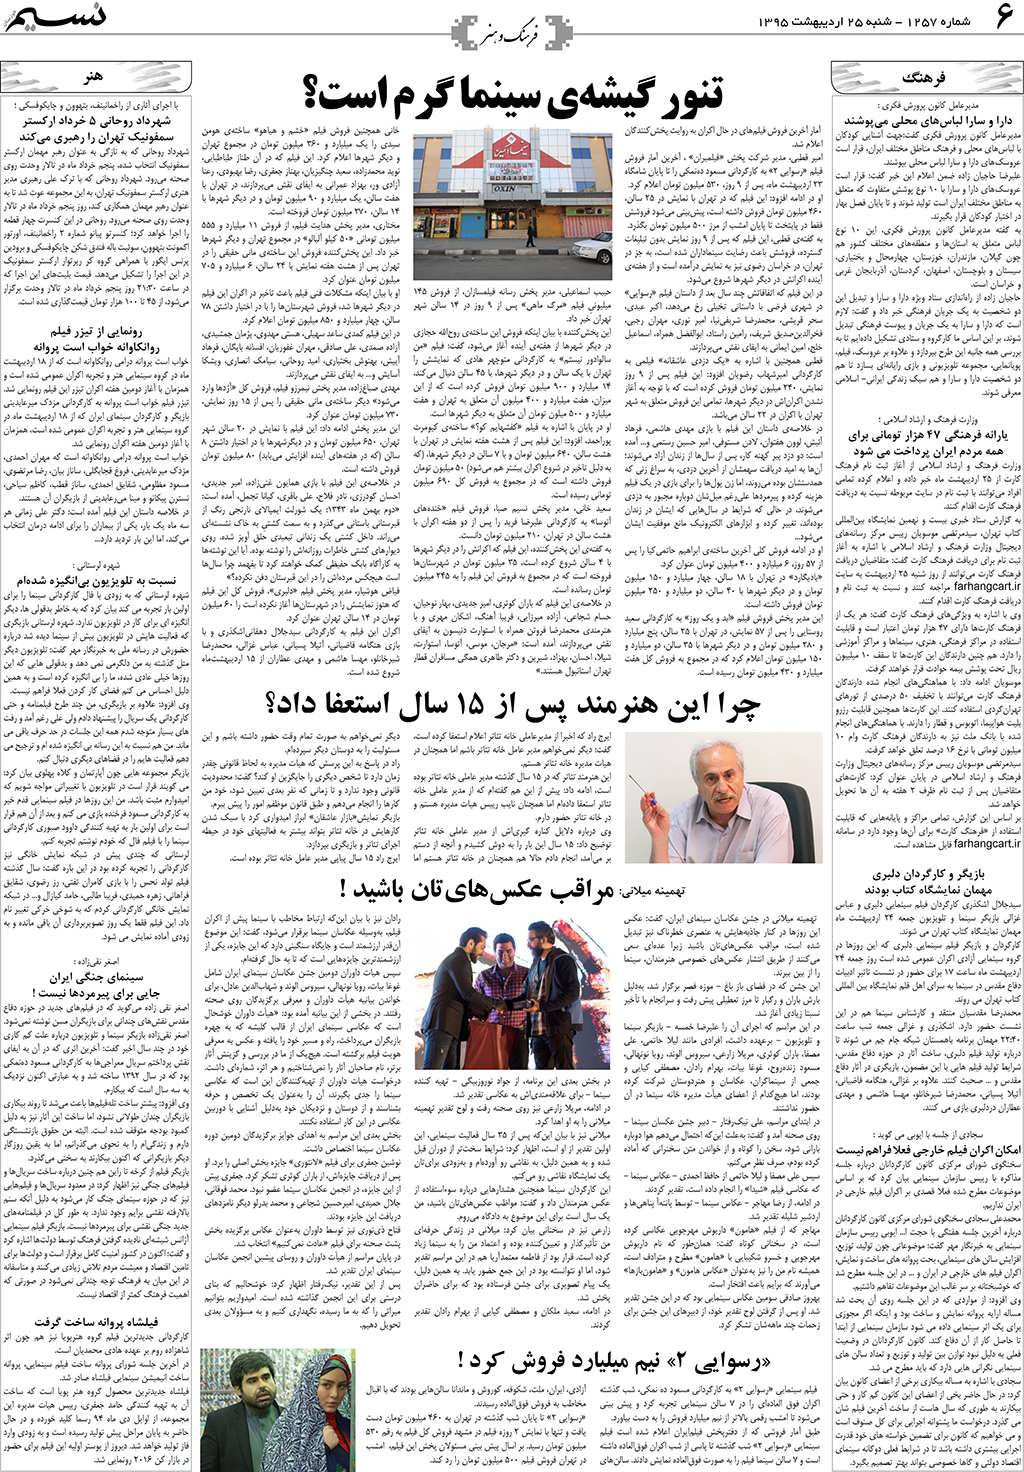 صفحه فرهنگ و هنر روزنامه نسیم شماره 1257